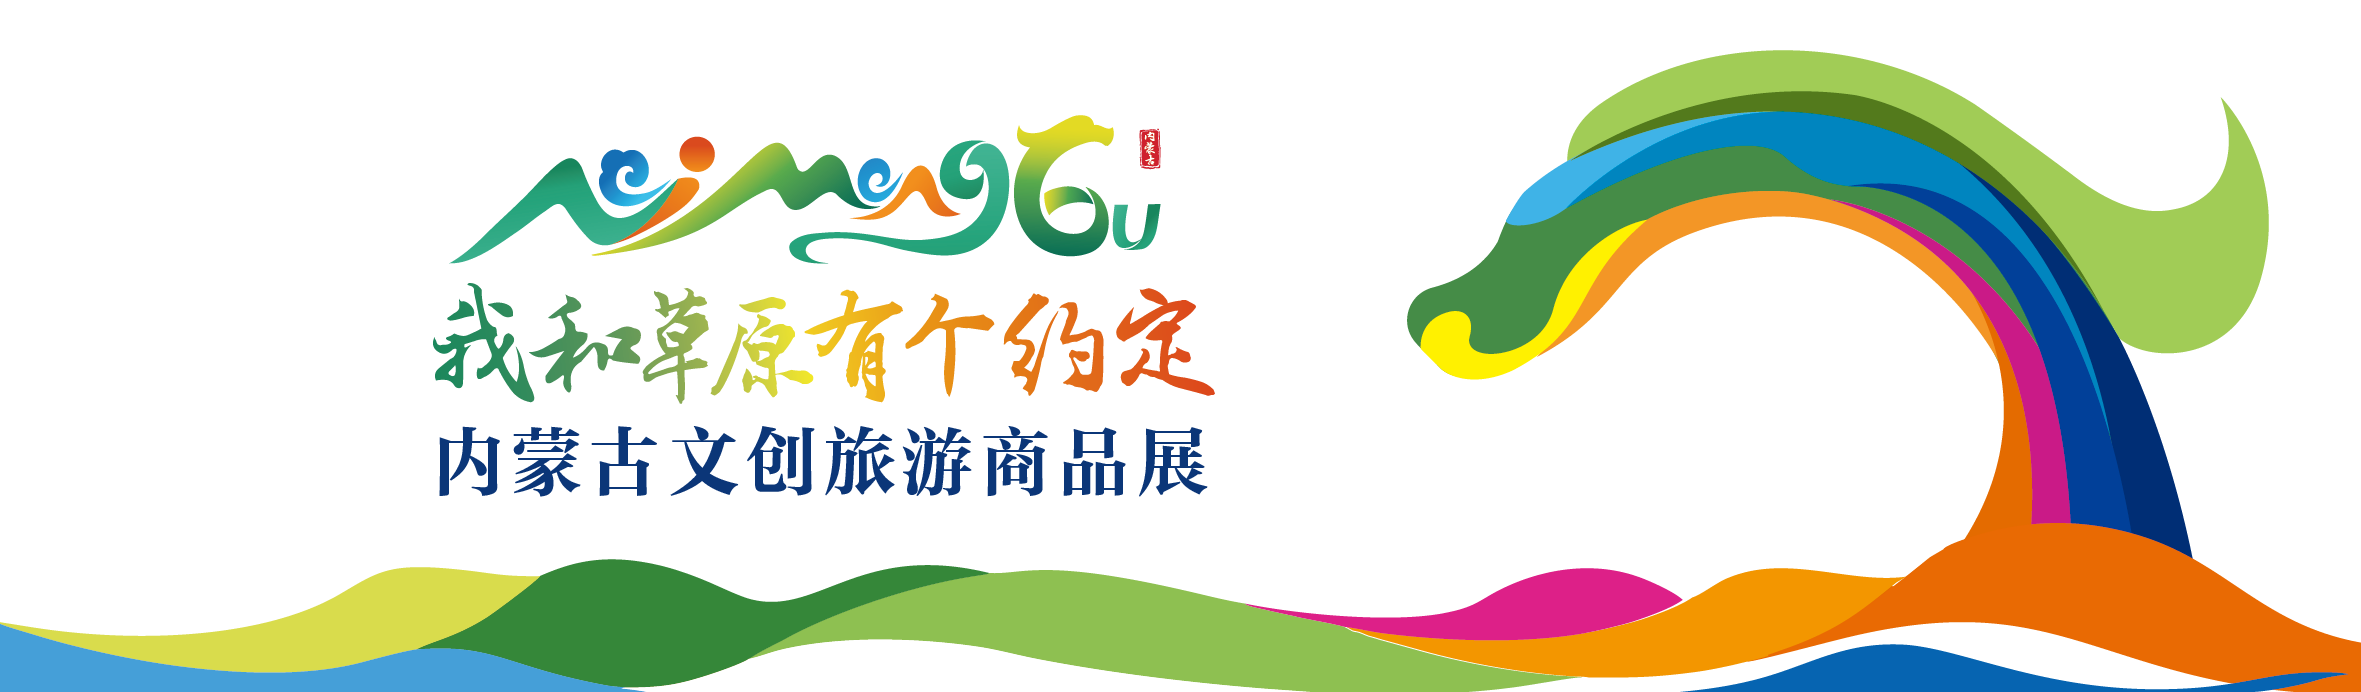 内蒙古文创旅游商品展9月25日在赤峰市举办